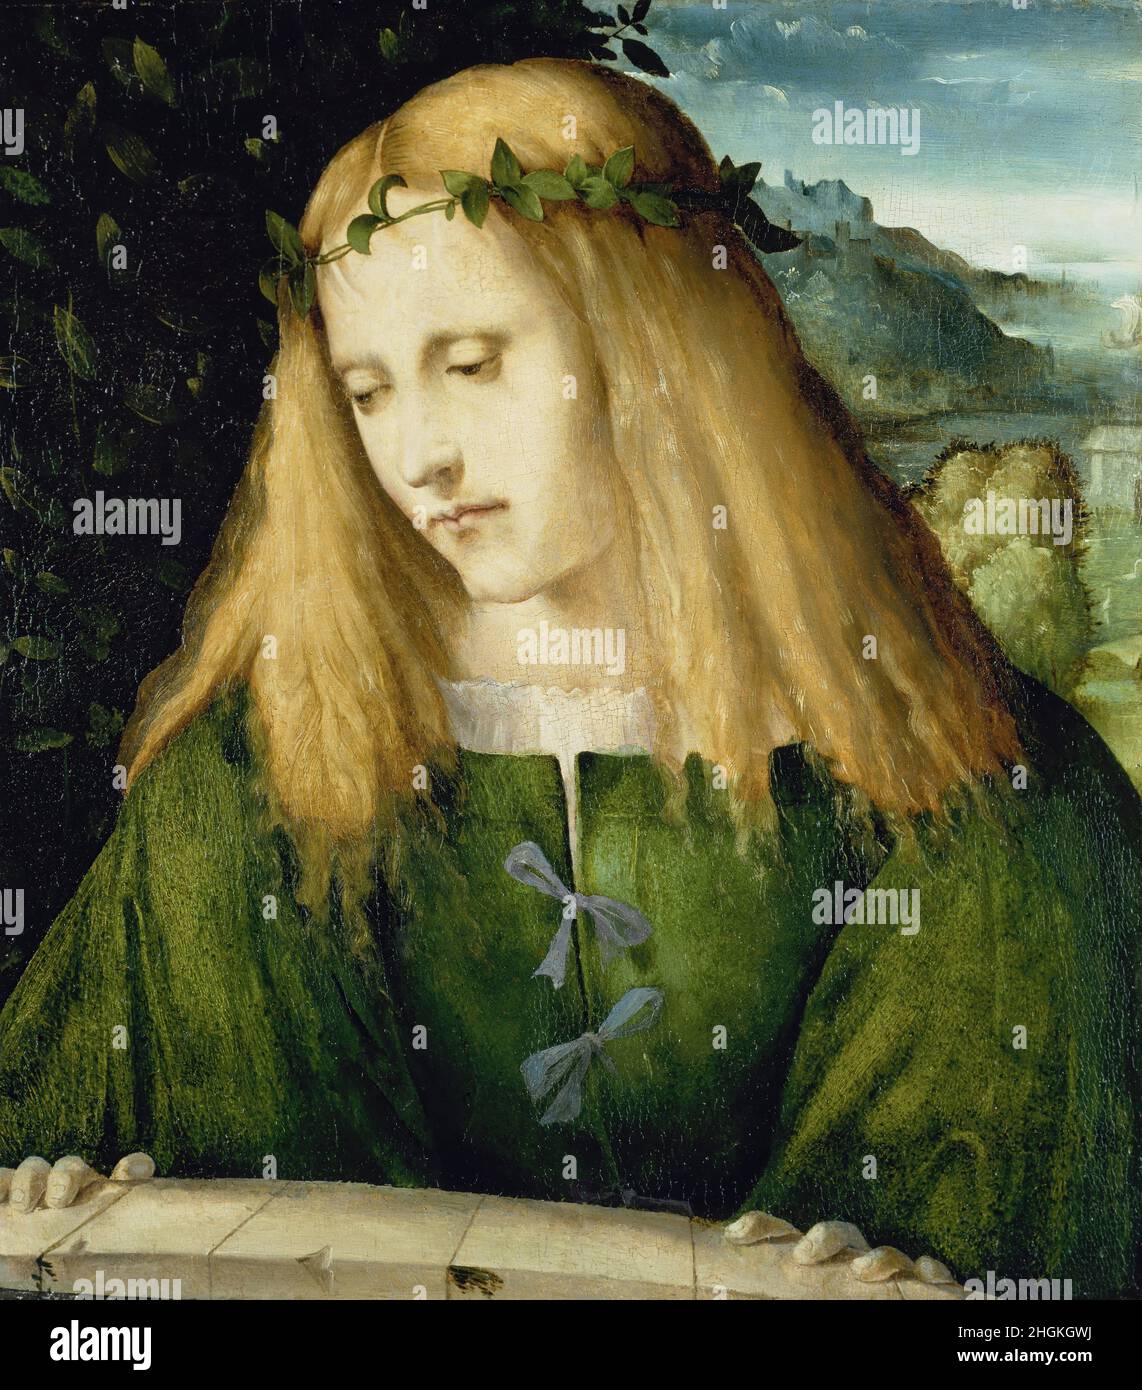 Narziss am Brunnen - 1510 11c. - olio su tavola di pioppo 39,7 x 35,3 cm - Melone Altobello Stock Photo